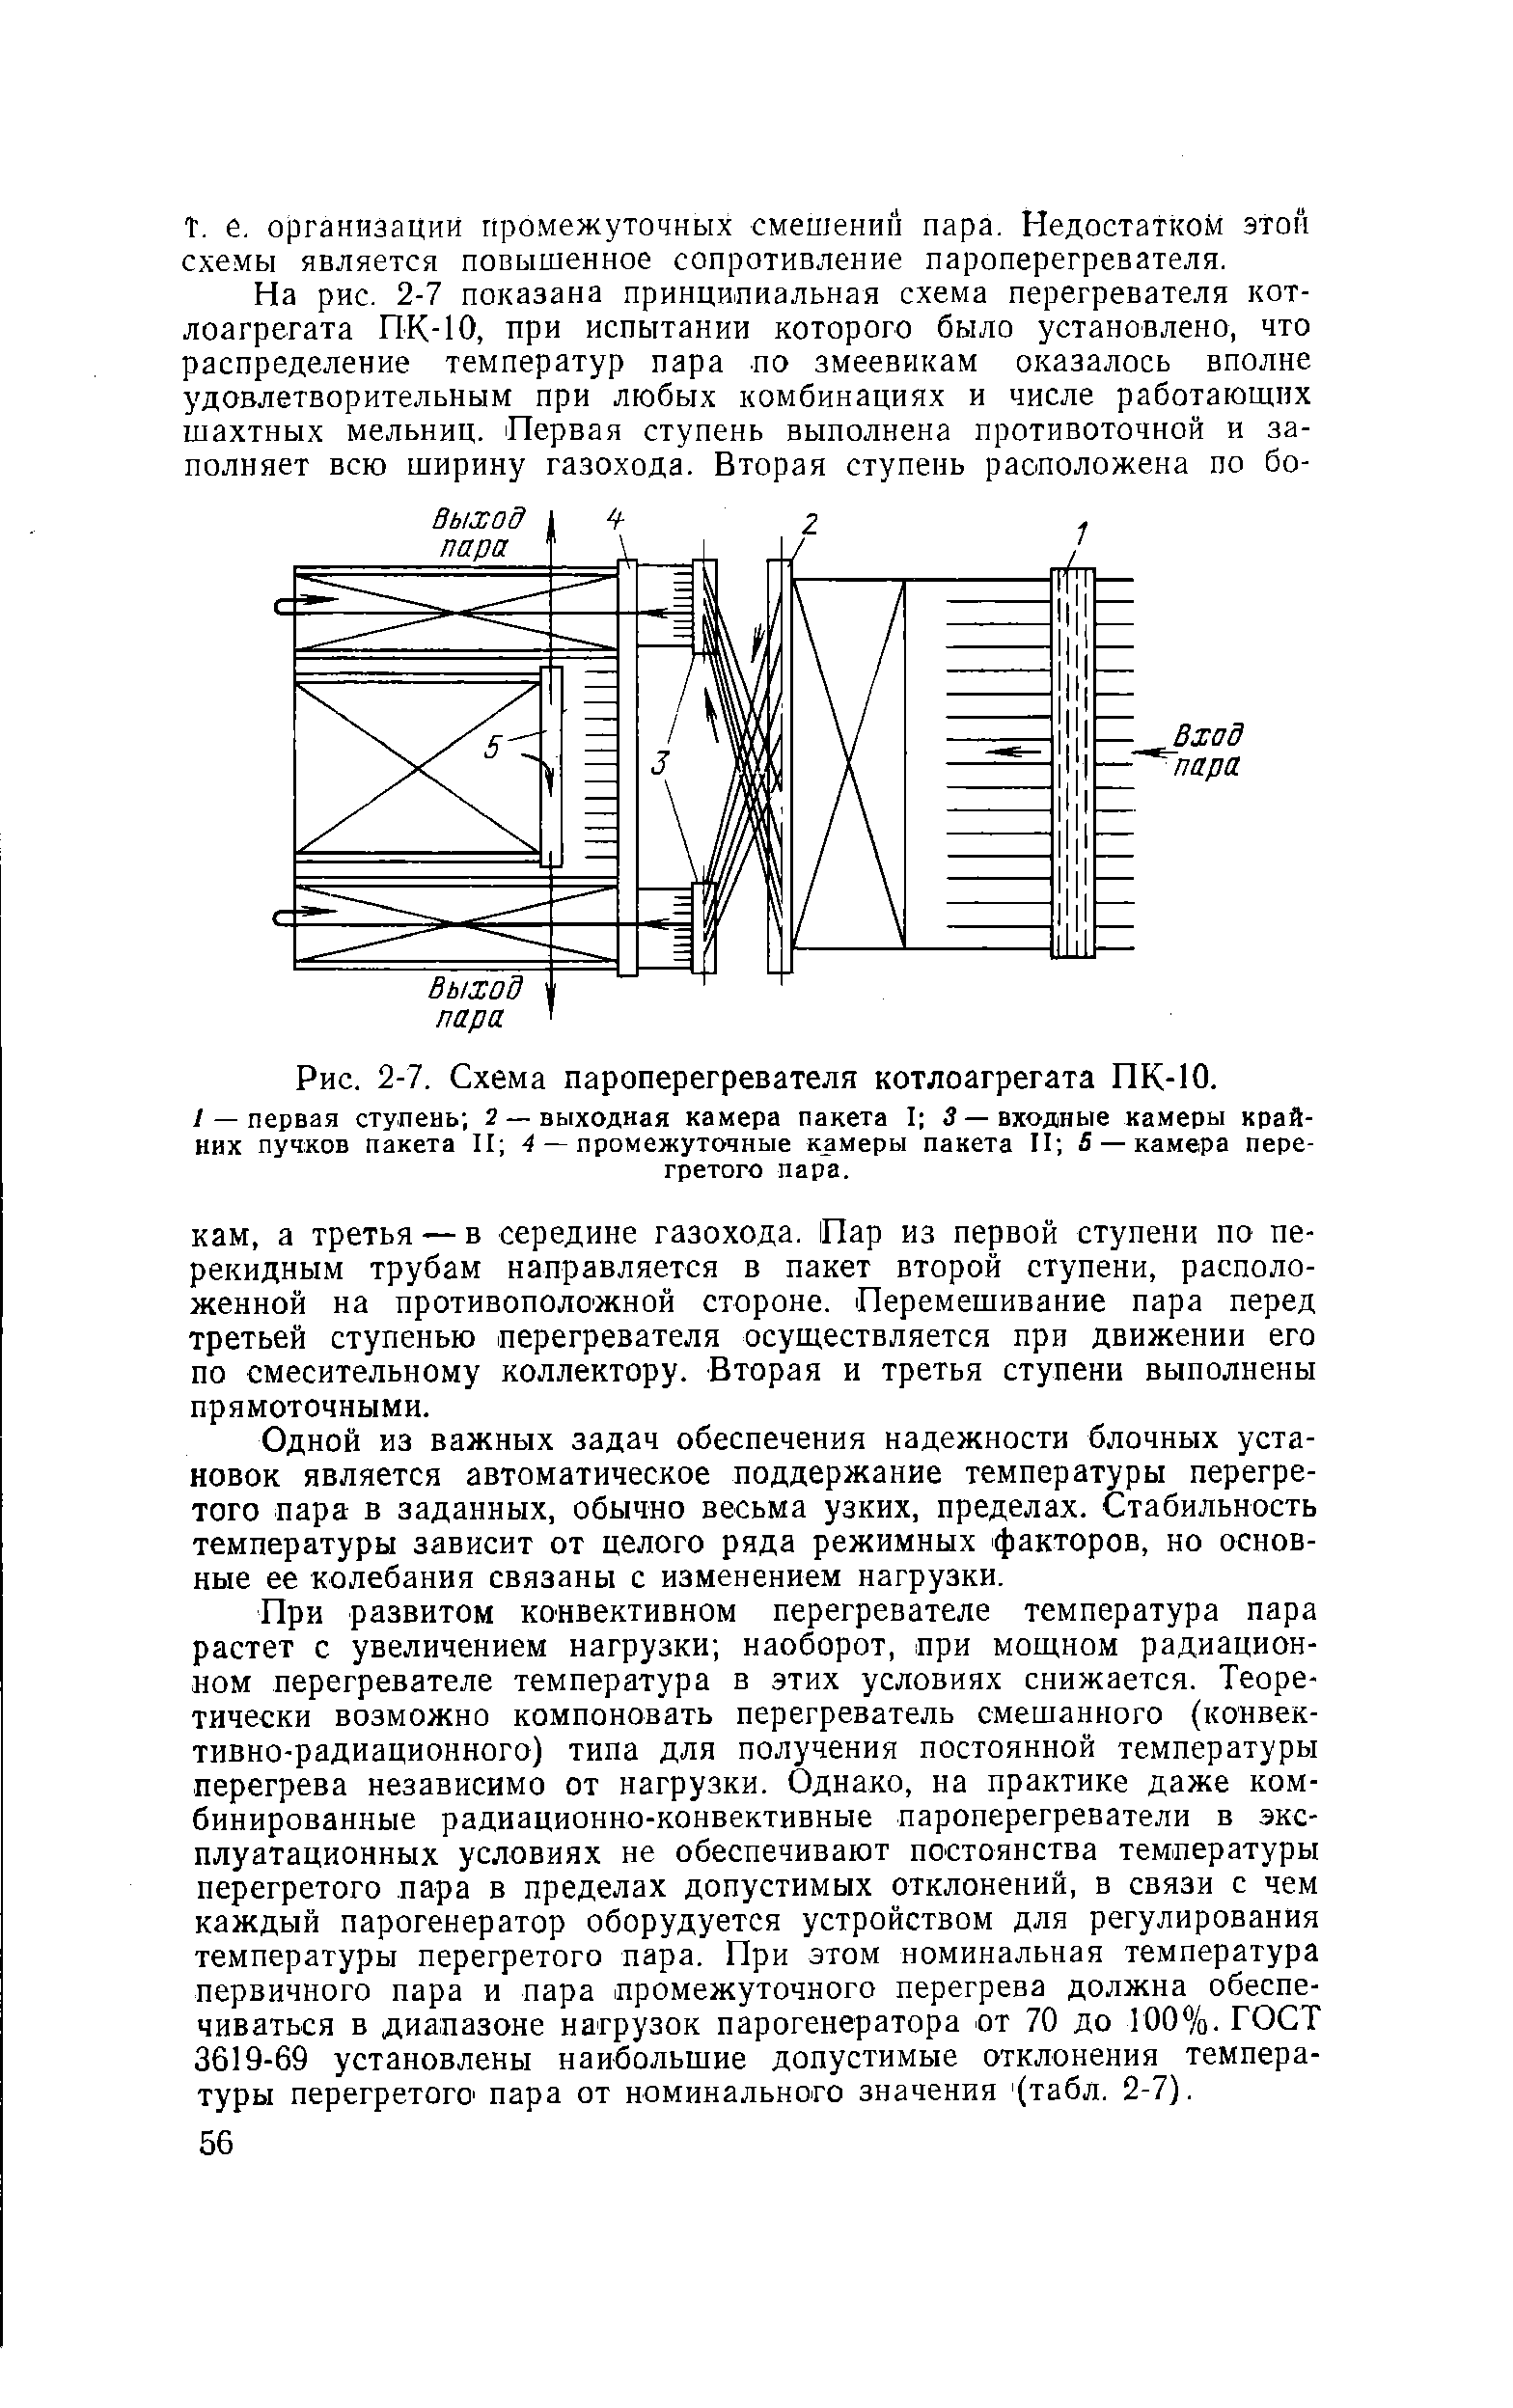 Рис. 2-7. Схема пароперегревателя котлоагрегата ПК-10.
